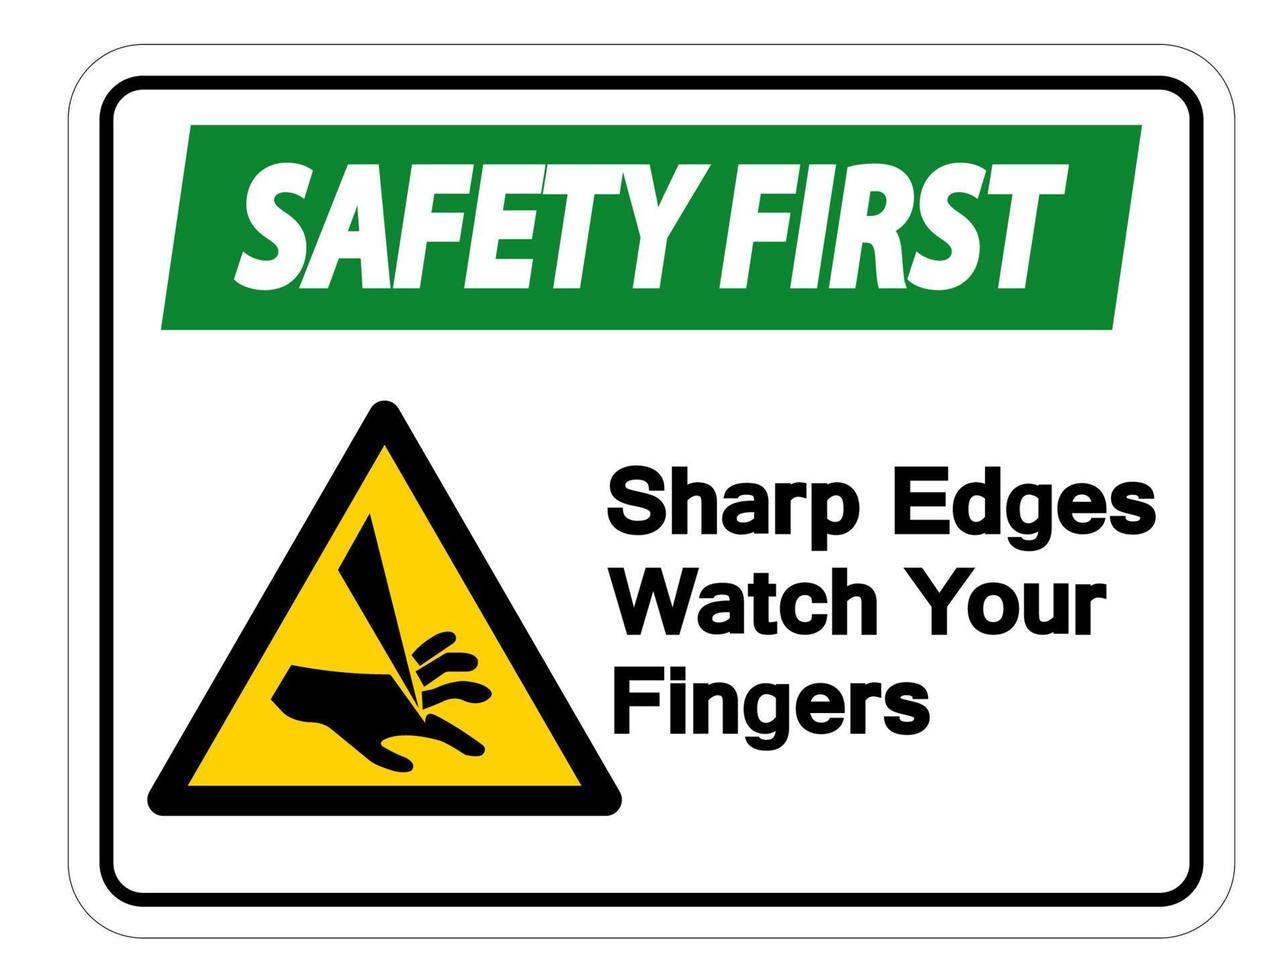 segurança em primeiro lugar, observe o sinal de símbolo de seus dedos no fundo branco vetor